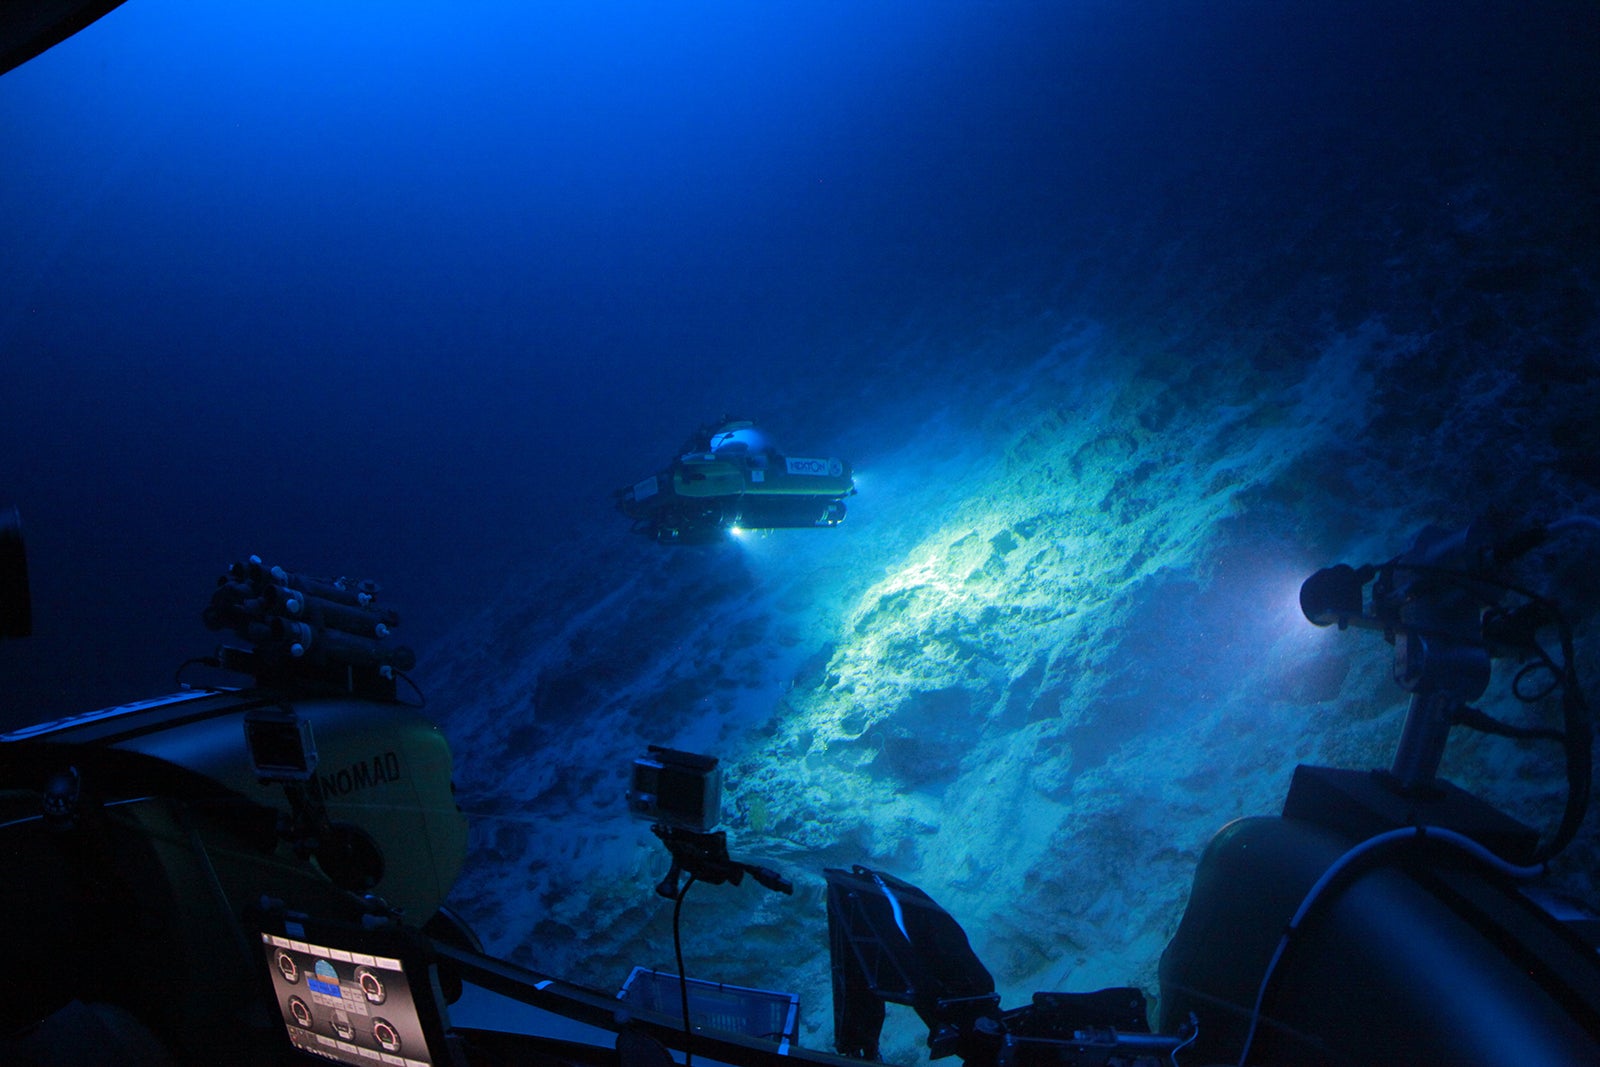 Submersible Nemo at 250m on Tiger Bank (Credit: Nekton)